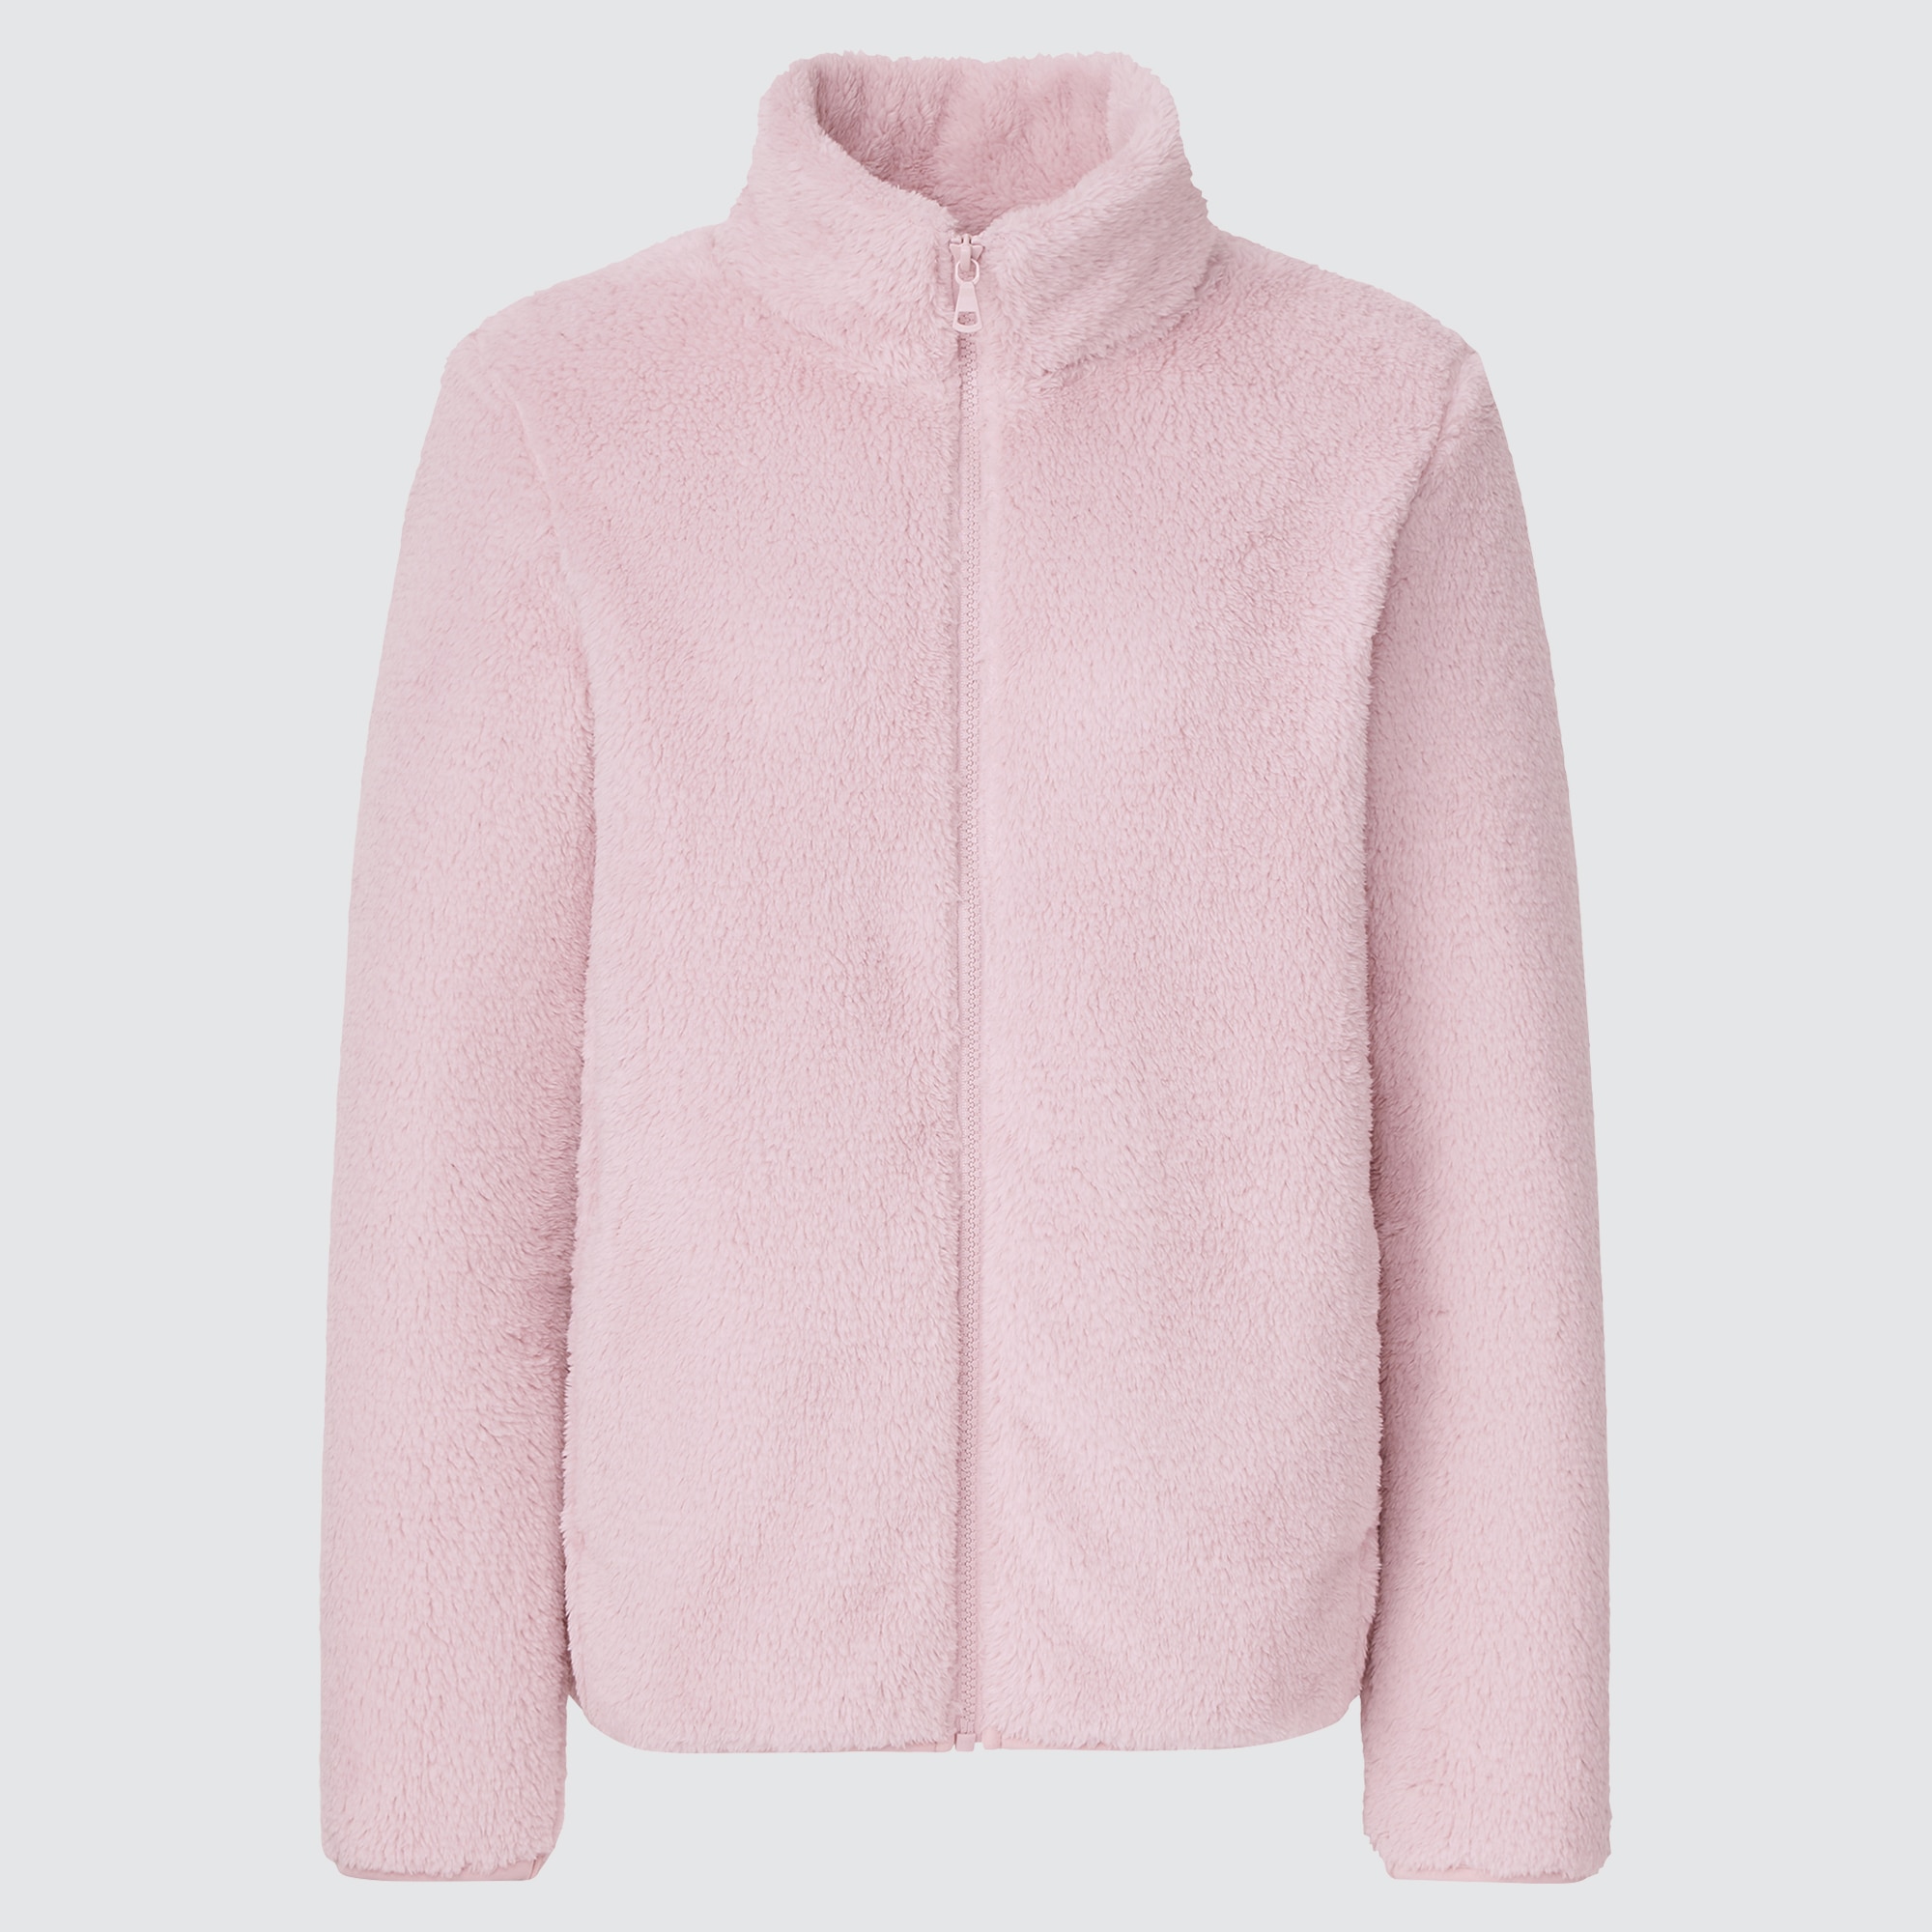 ASOS DESIGN oversized borg zip up fleece in pink